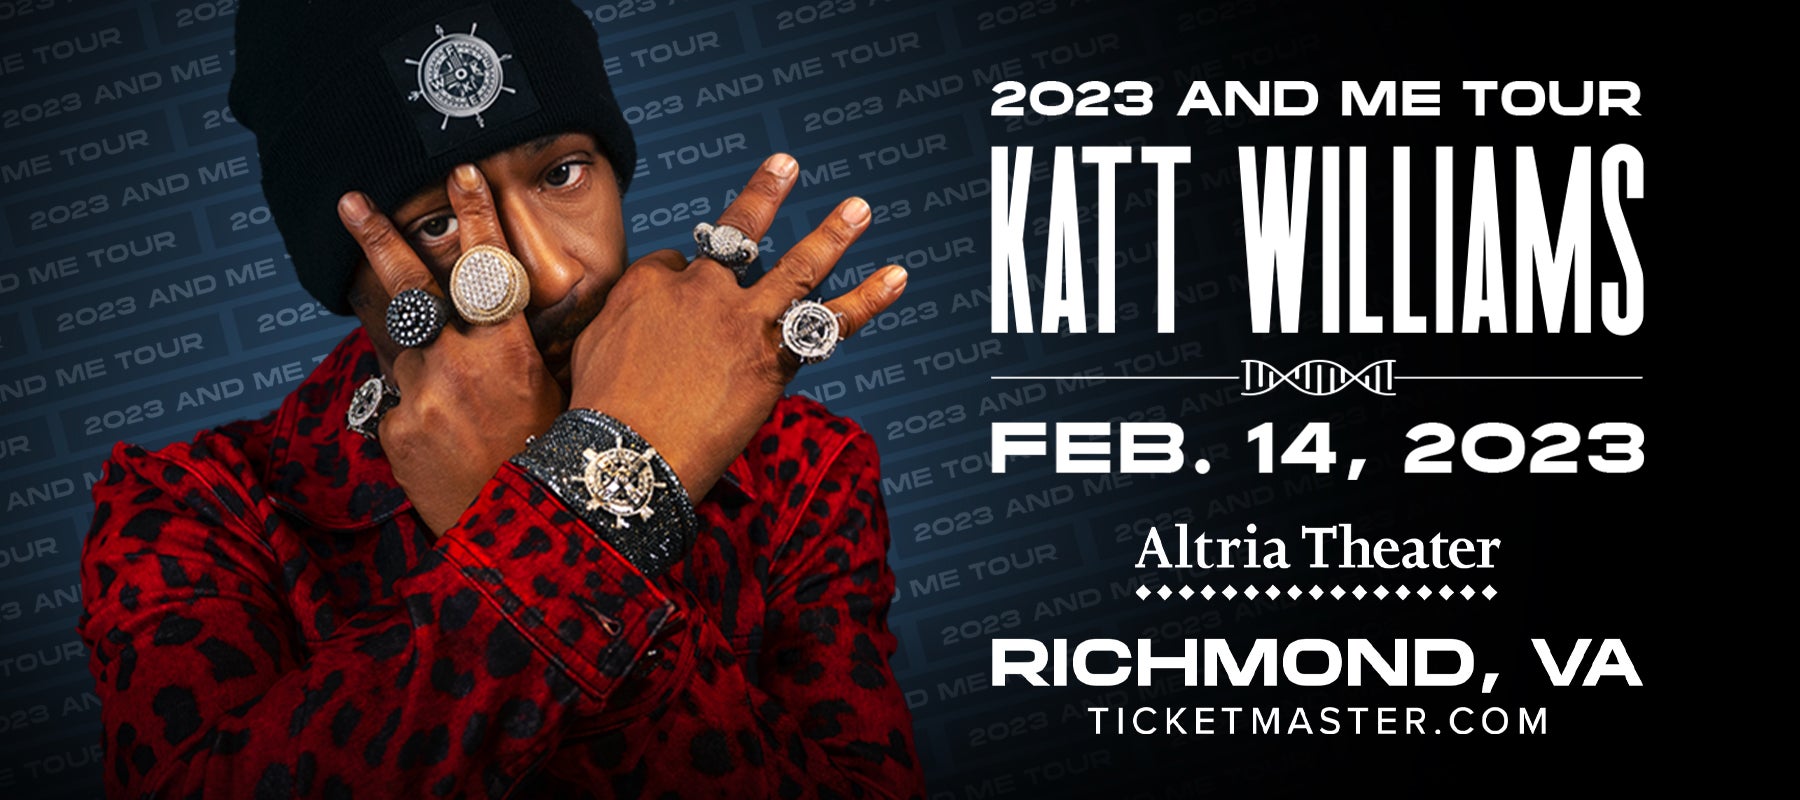 katt williams tour 2023 chicago